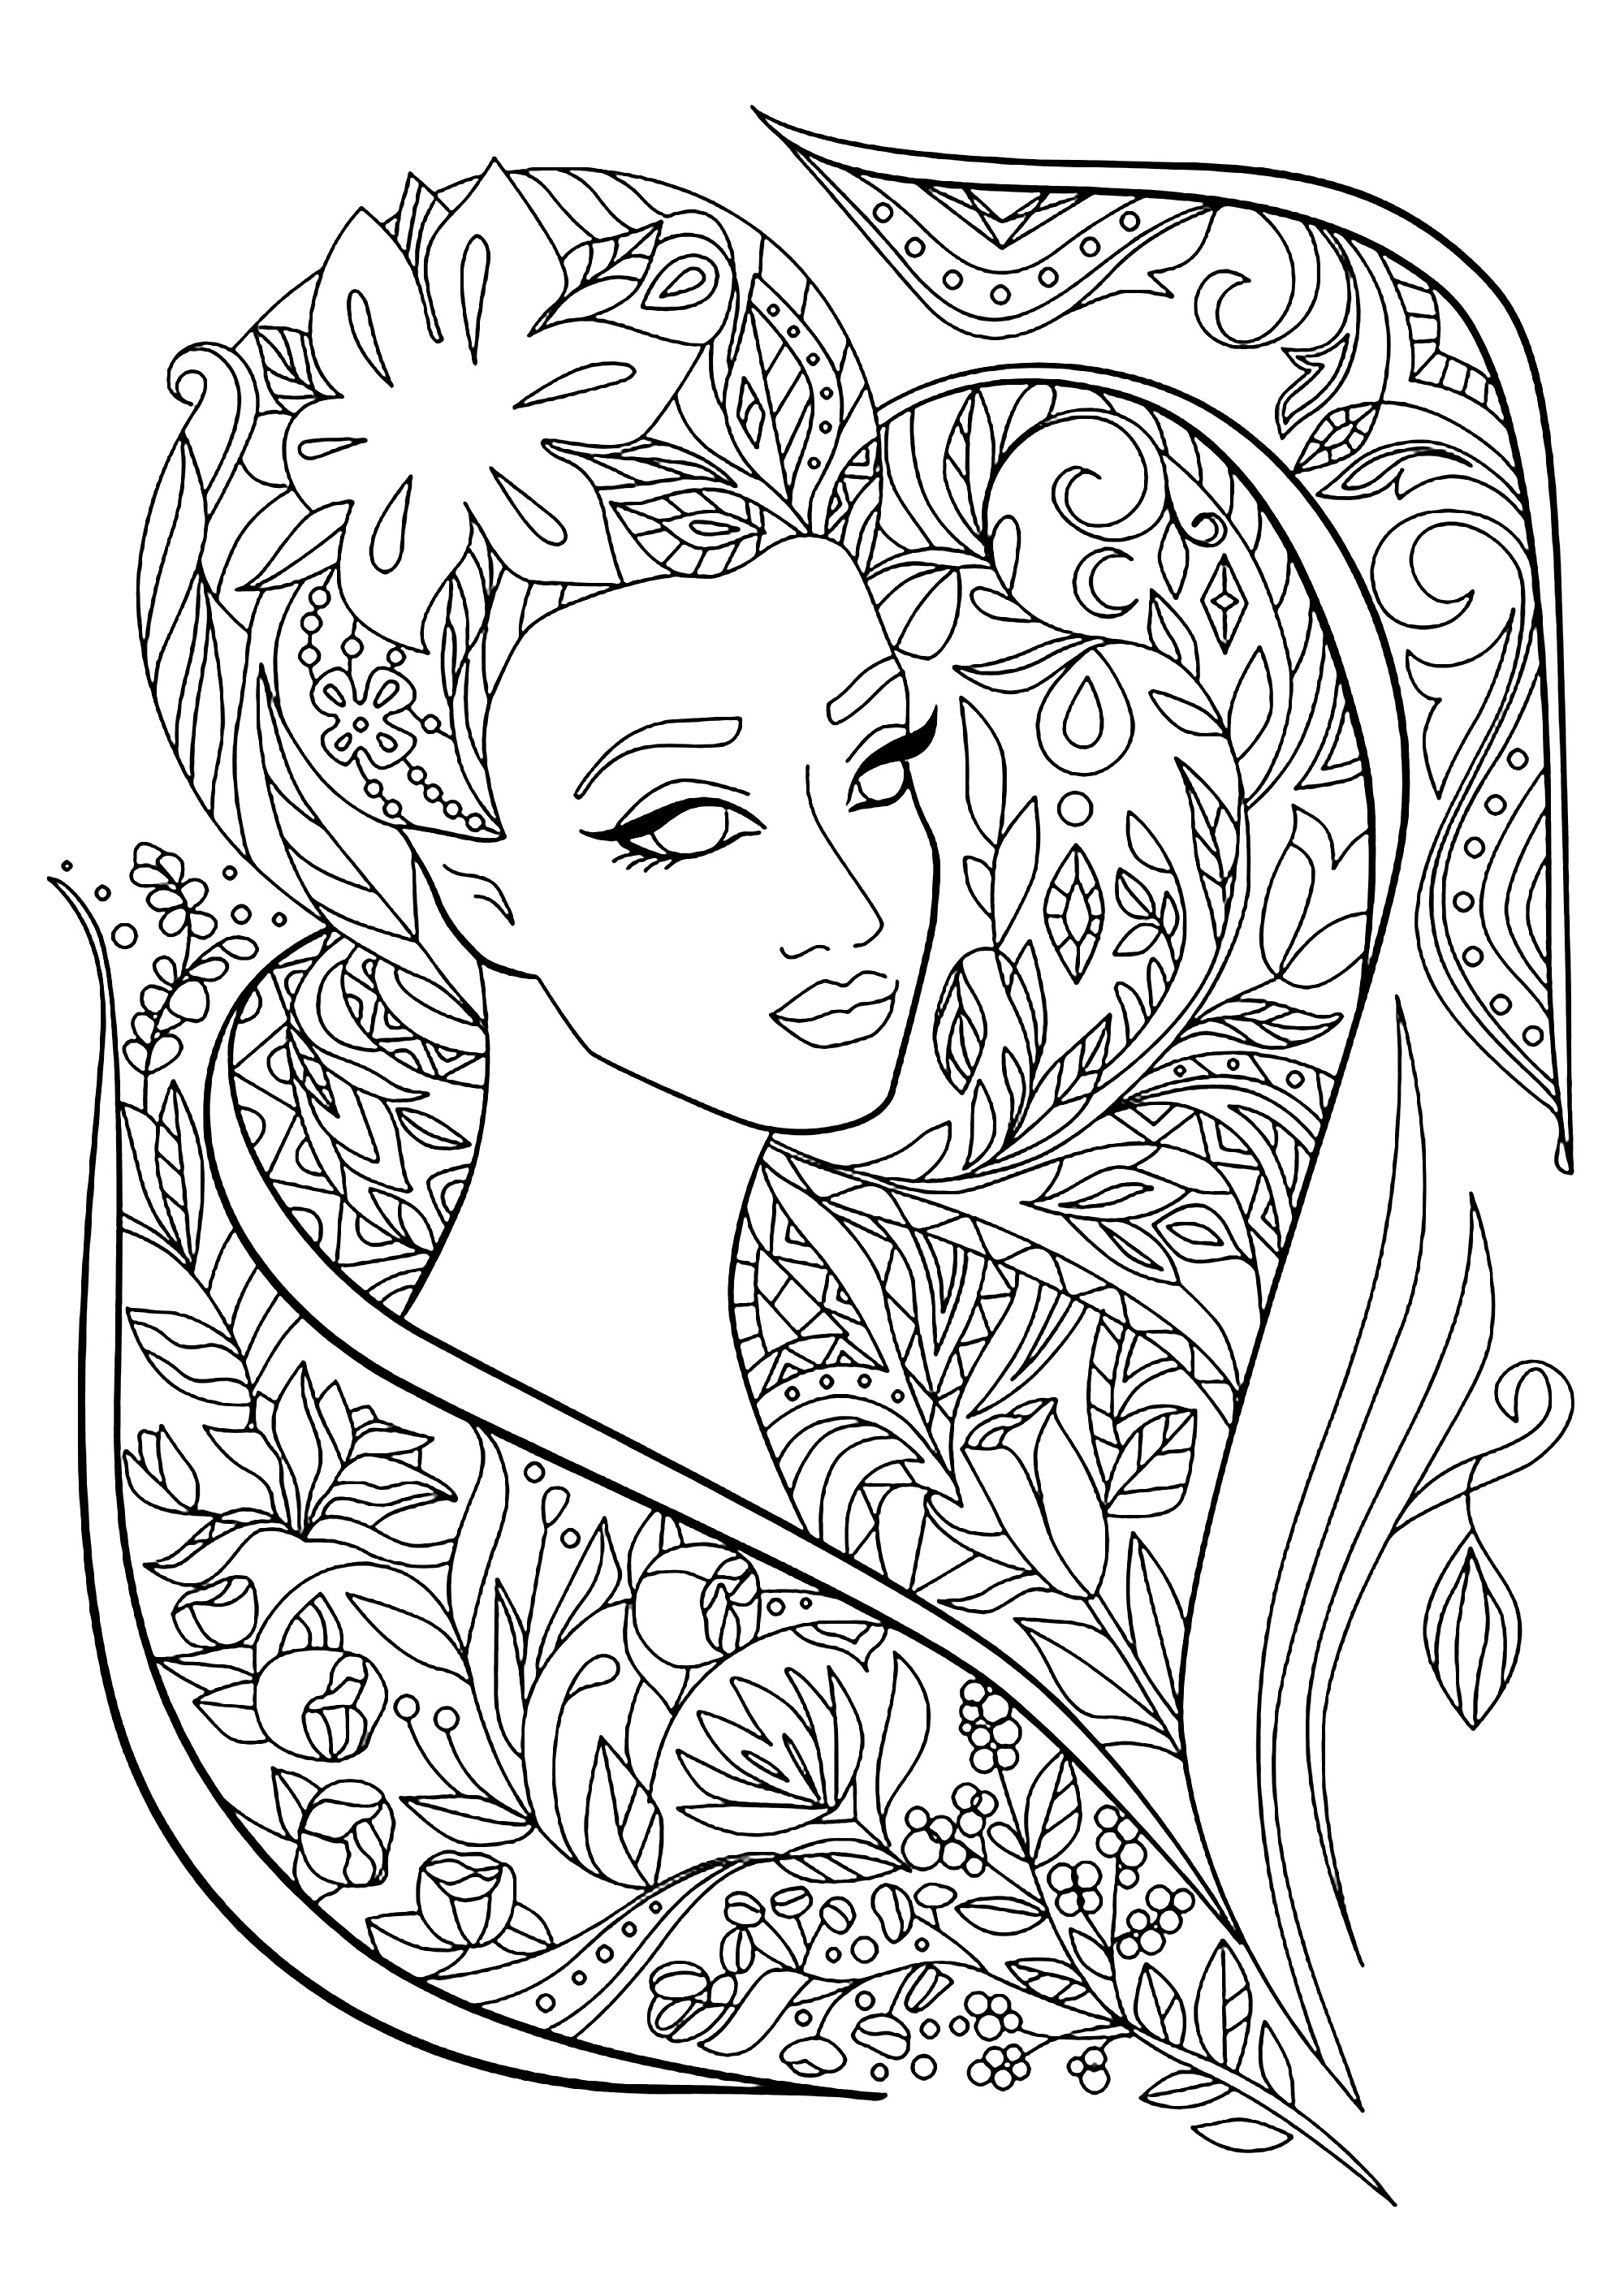 Cara de mujer con bonitas flores y hojas para colorear, Artista : Navada   Origen : 123rf